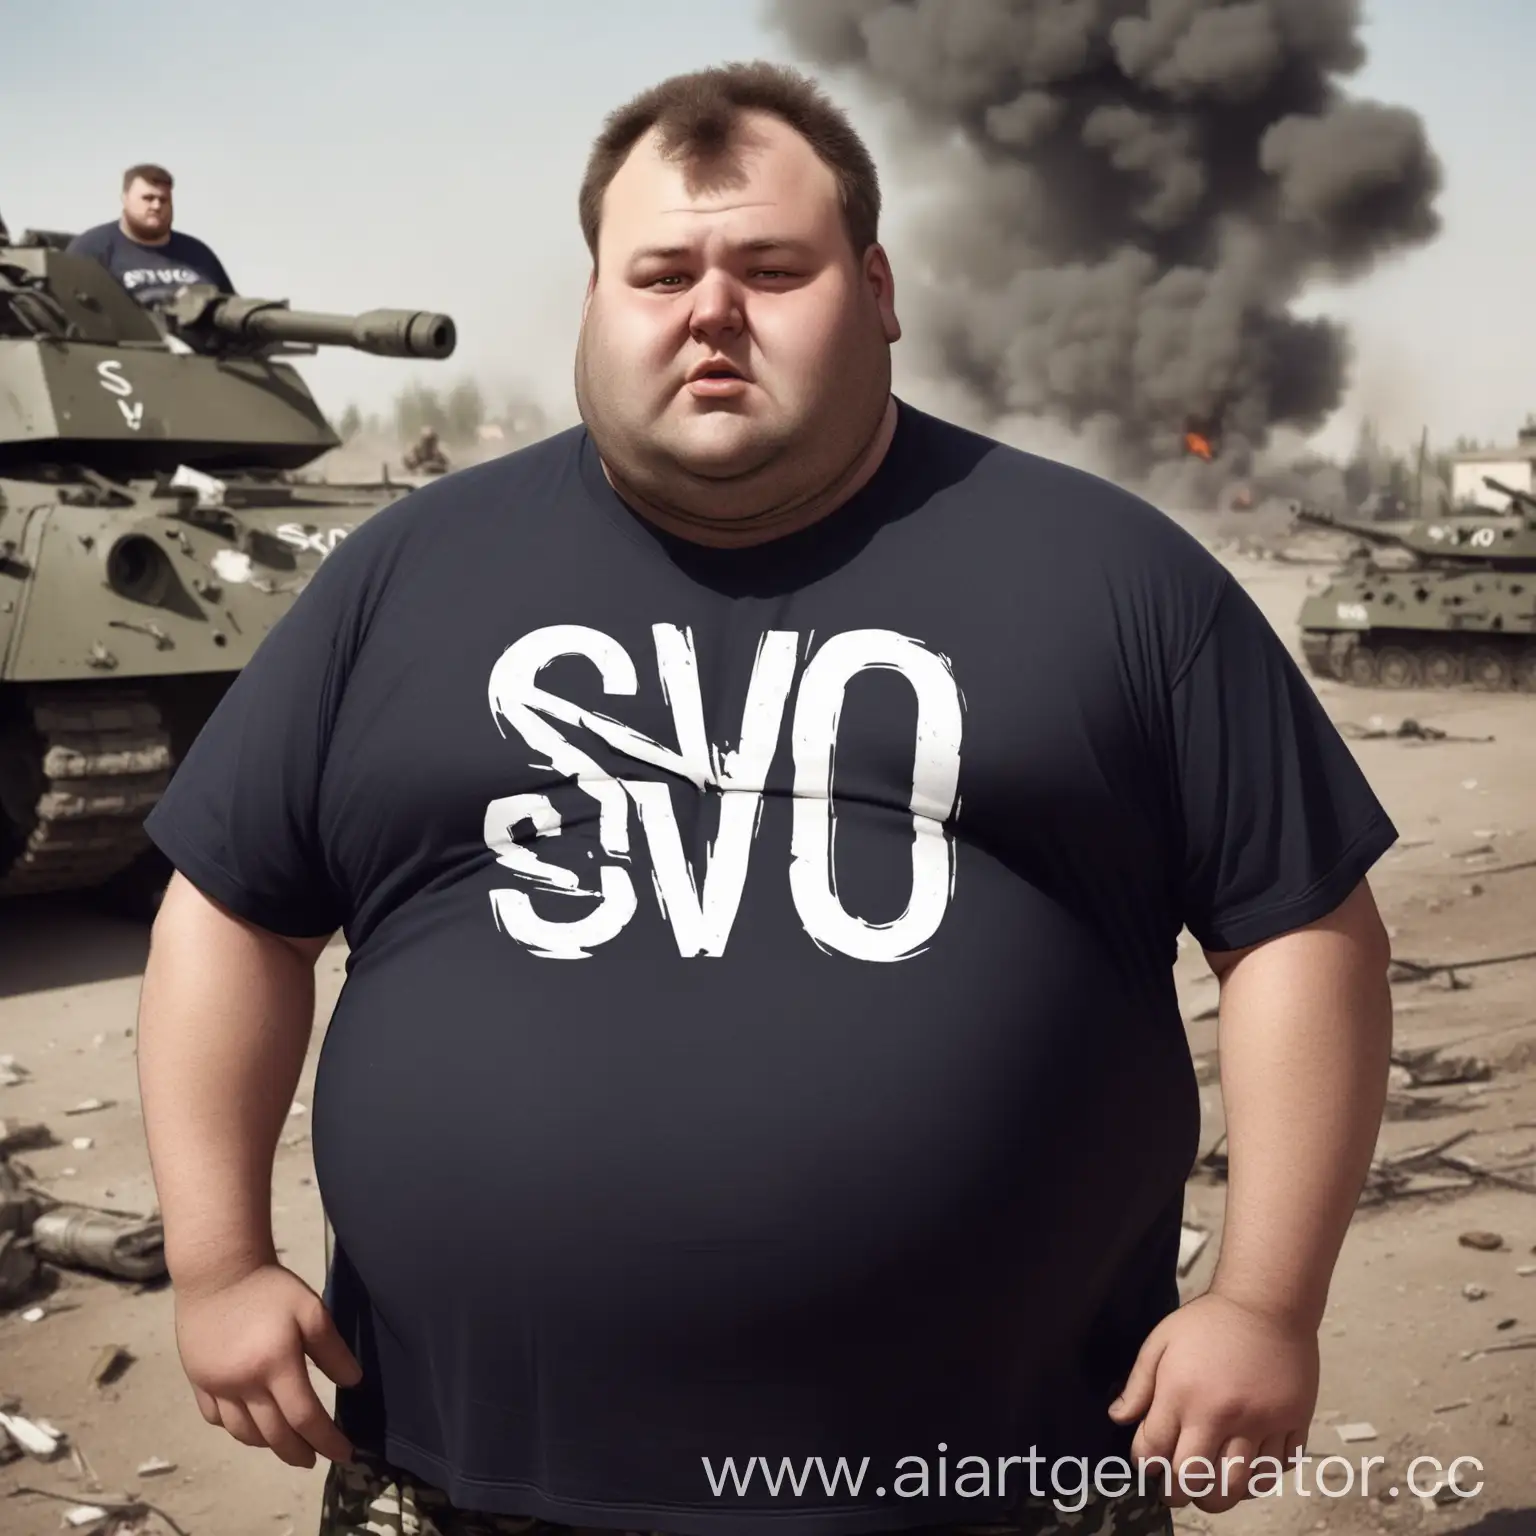 Overweight-Man-in-SVO-TShirt-Amidst-War